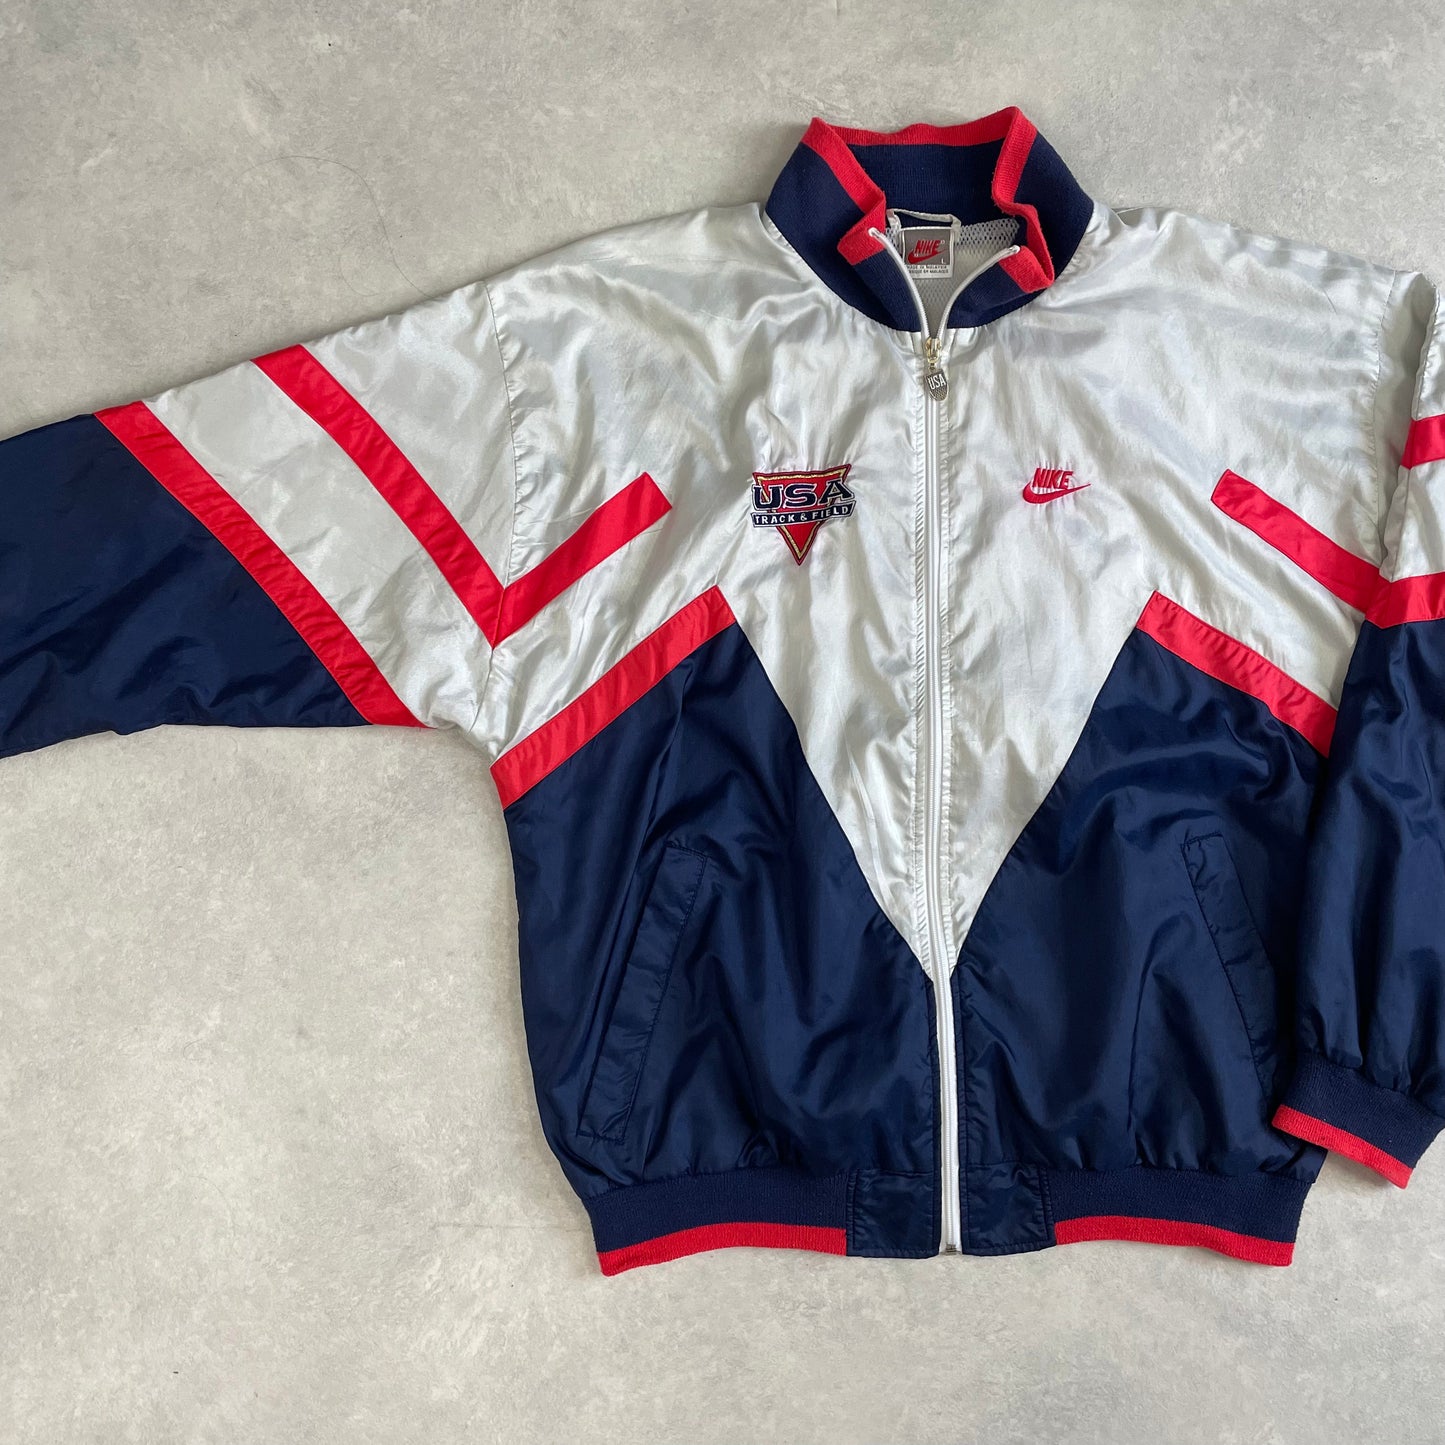 Vintage Nike Jacket USA Track & Field Jacket 90’s